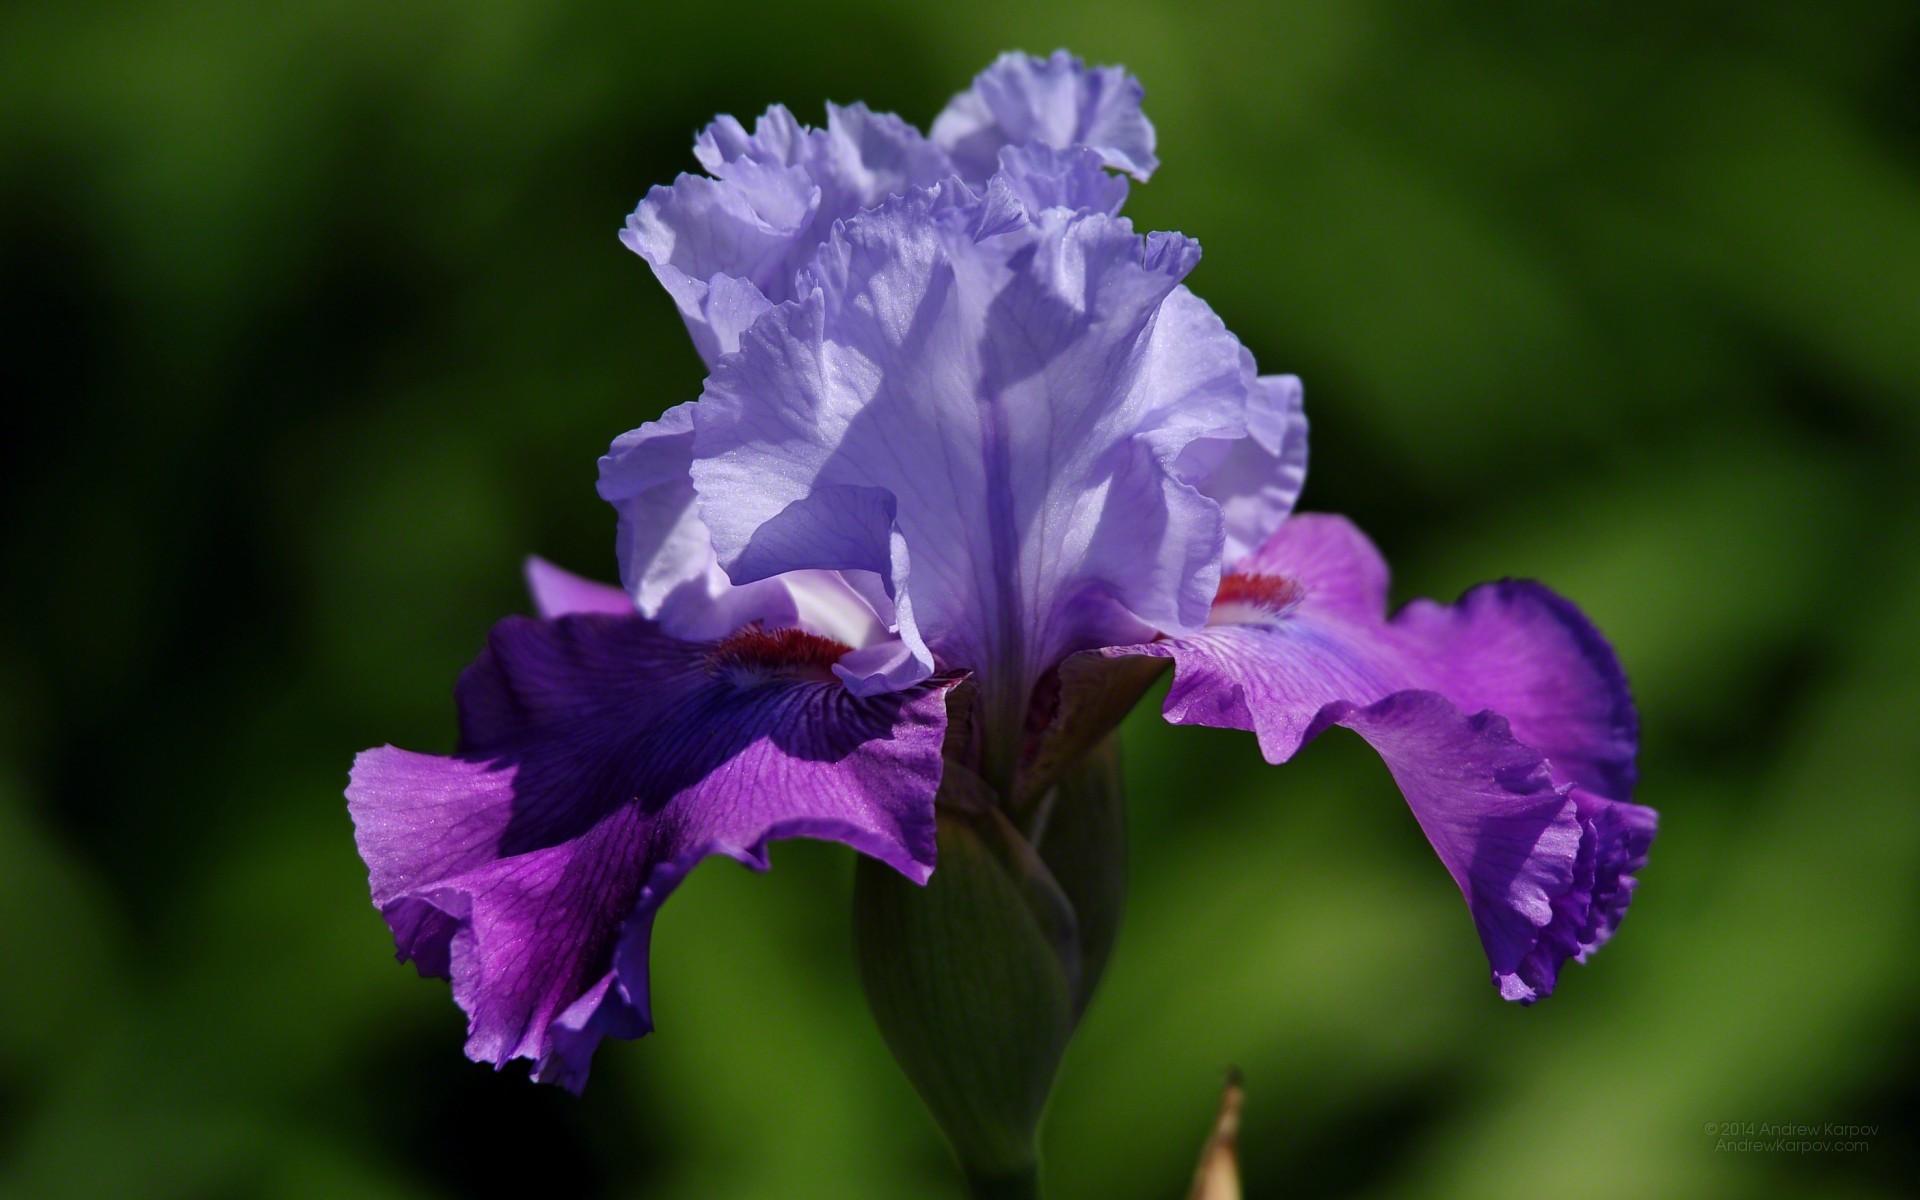 Iris Flower Wallpaper